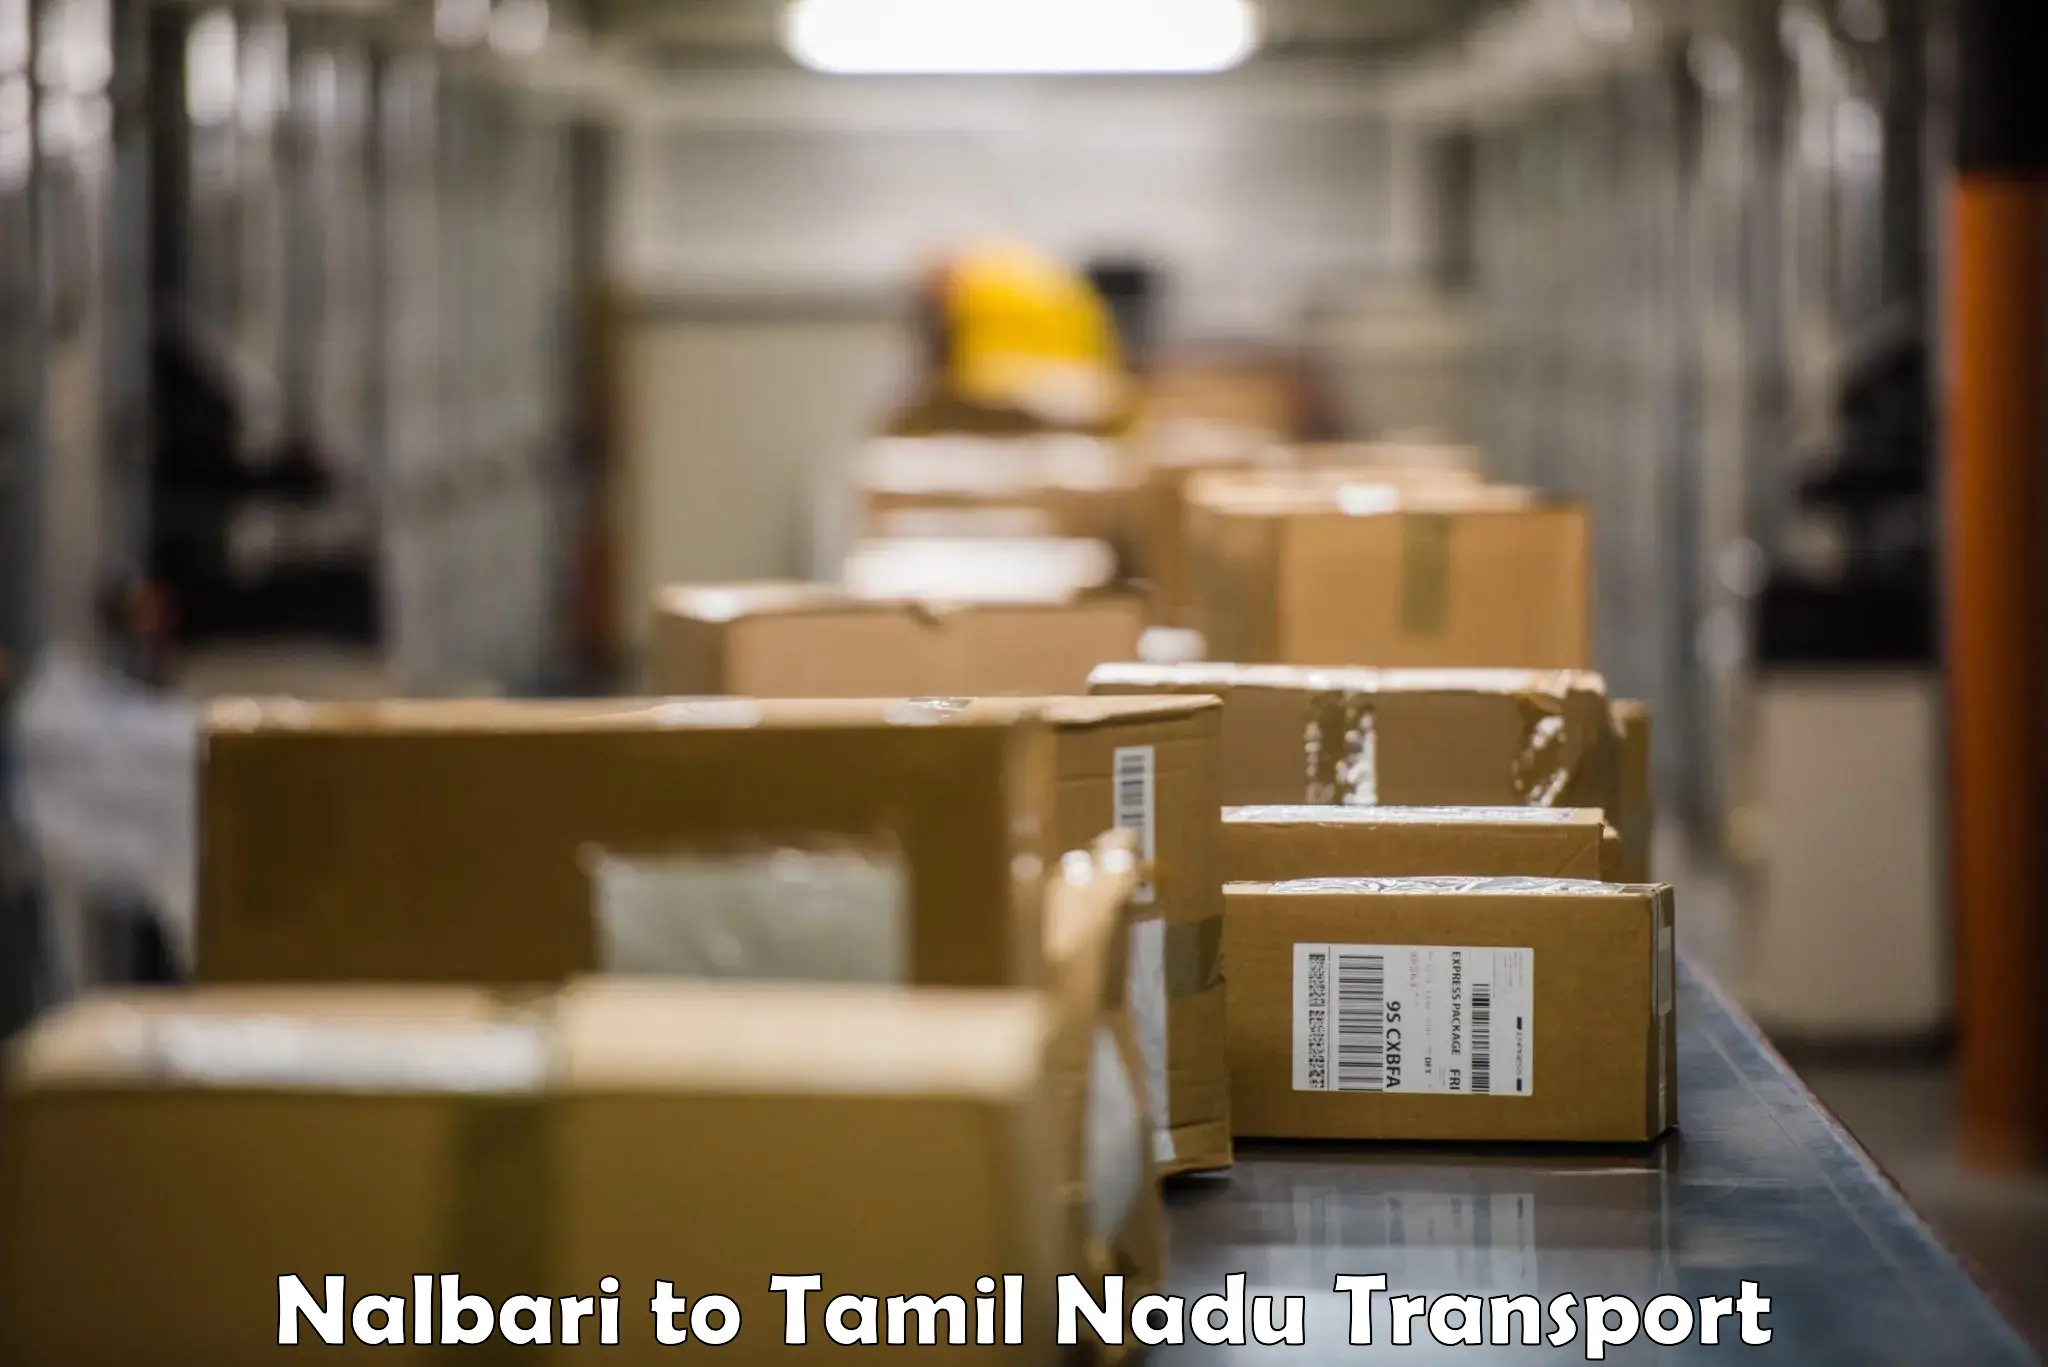 Nearby transport service Nalbari to Ayyampettai